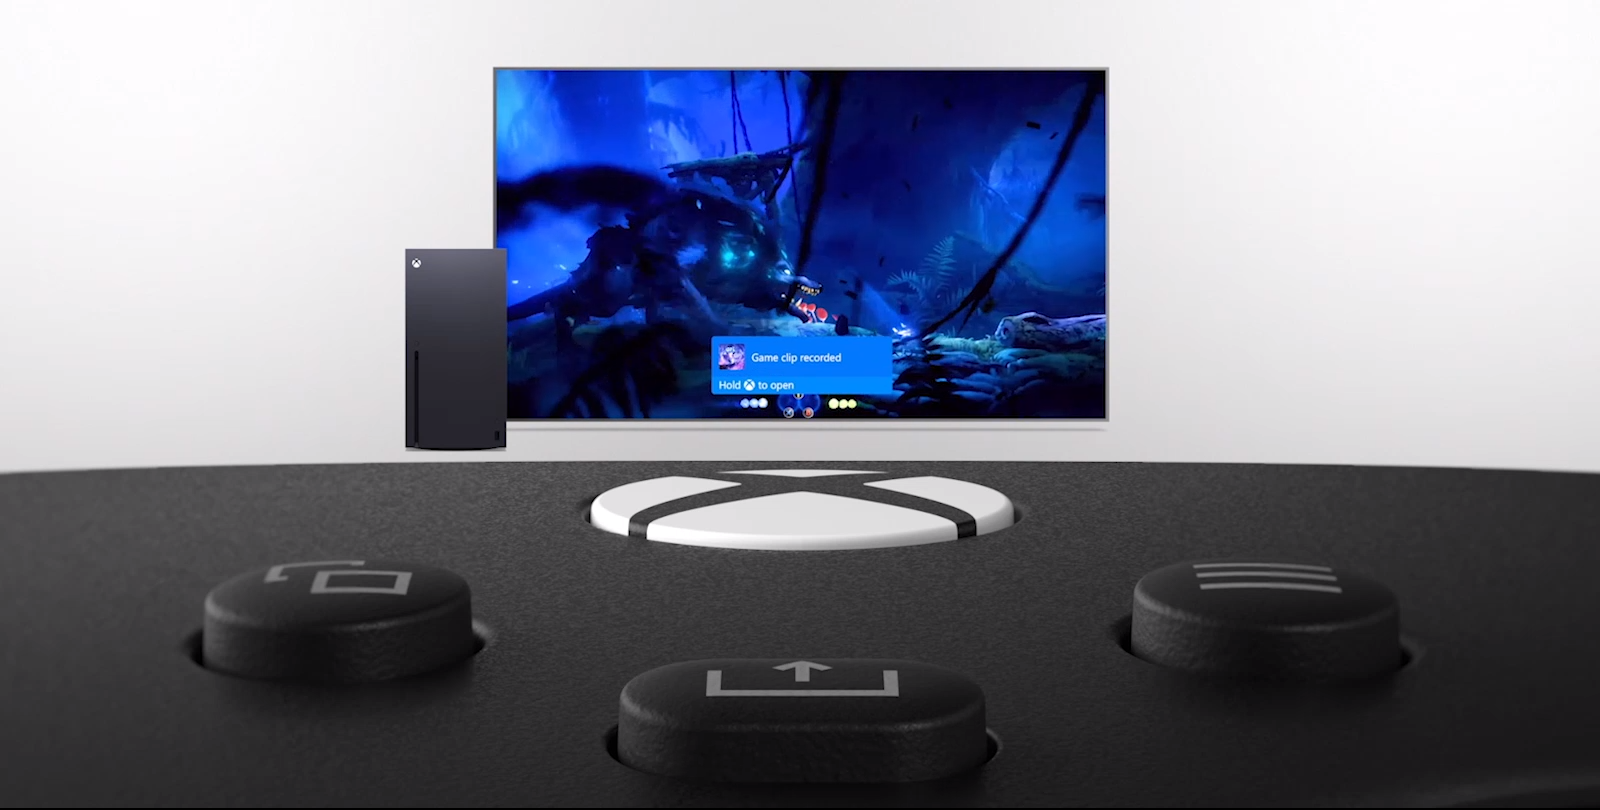 Tay cầm chơi game Xbox Series X Controller - Carbon Black + USB-C Cable - Hàng chính hãng trang bị nút share chuyên dụng